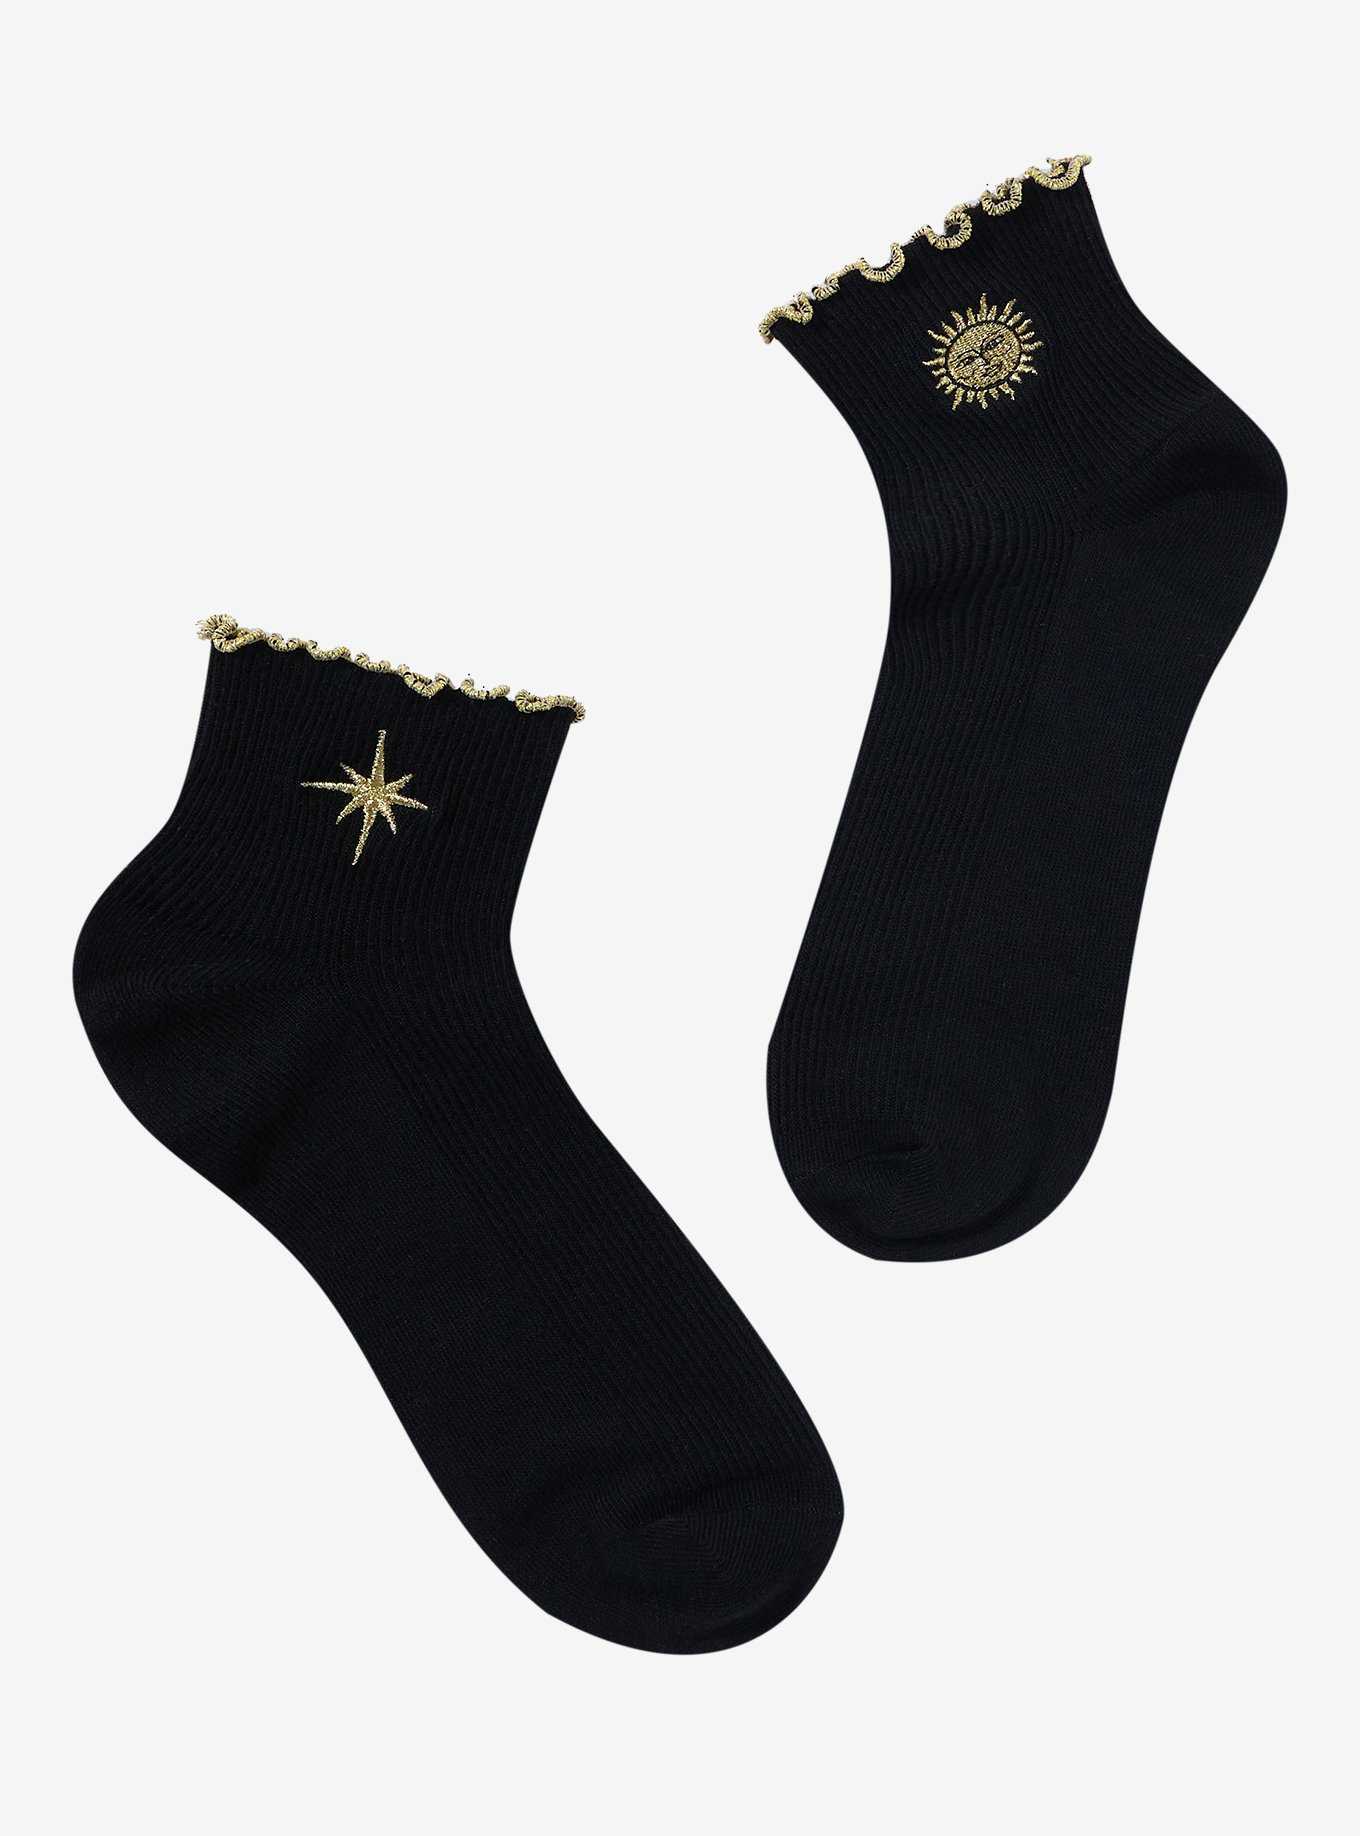 1 Pair New Women Sexy Black Mesh Short Ankle Socks Christmas Girls